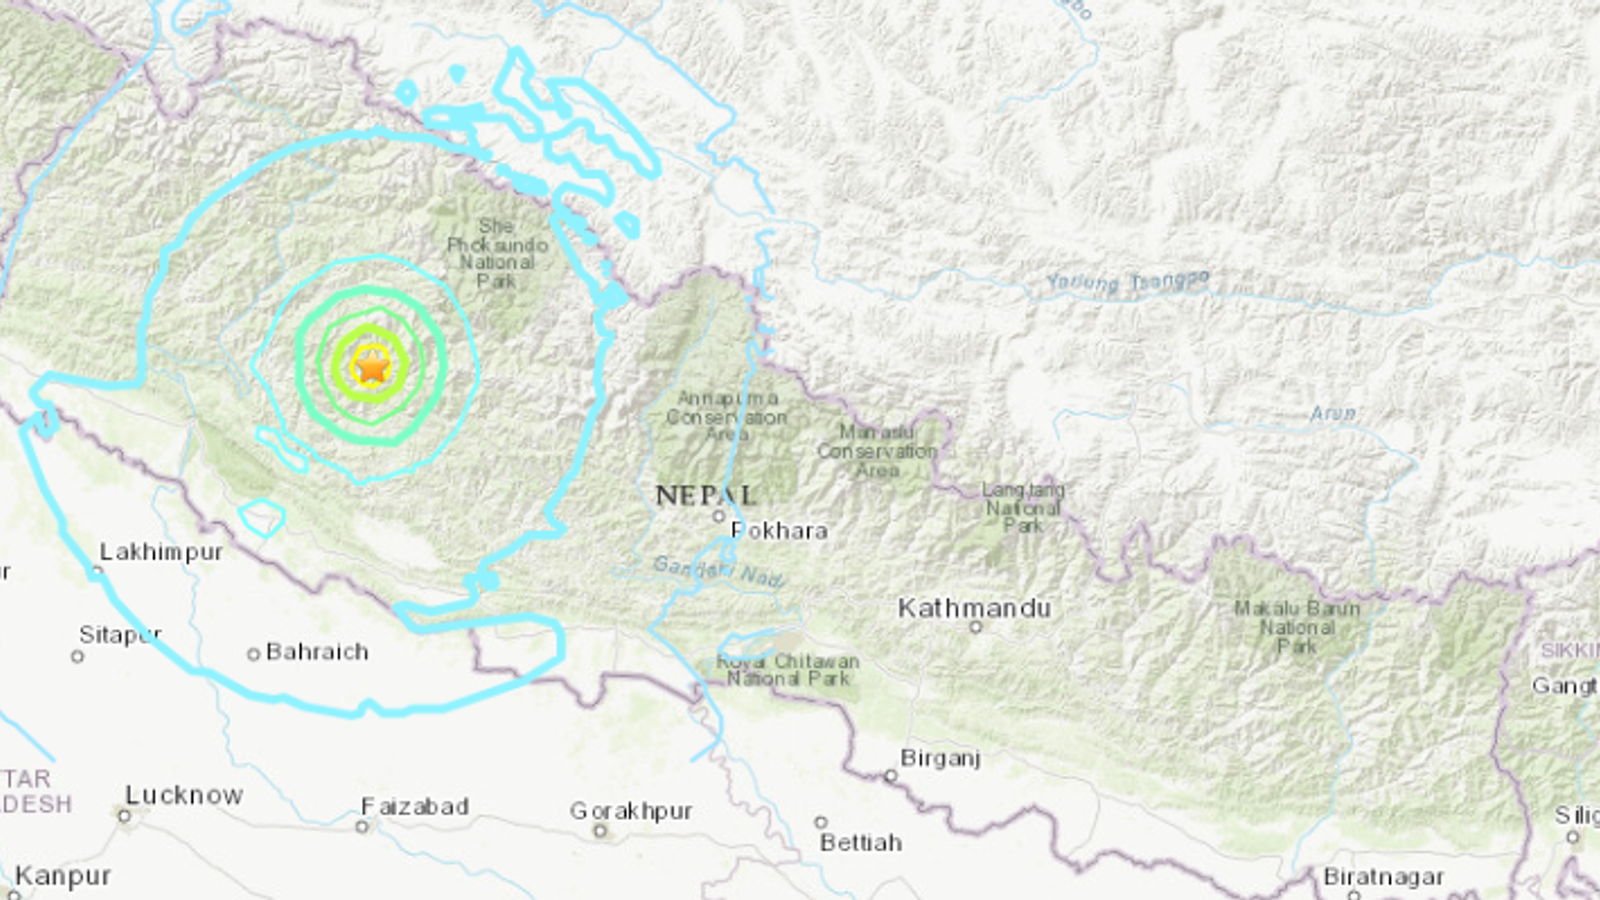 ネパールの地震で少なくとも69人死亡 – さらに多くの死者が確認される見通し | 世界のニュース